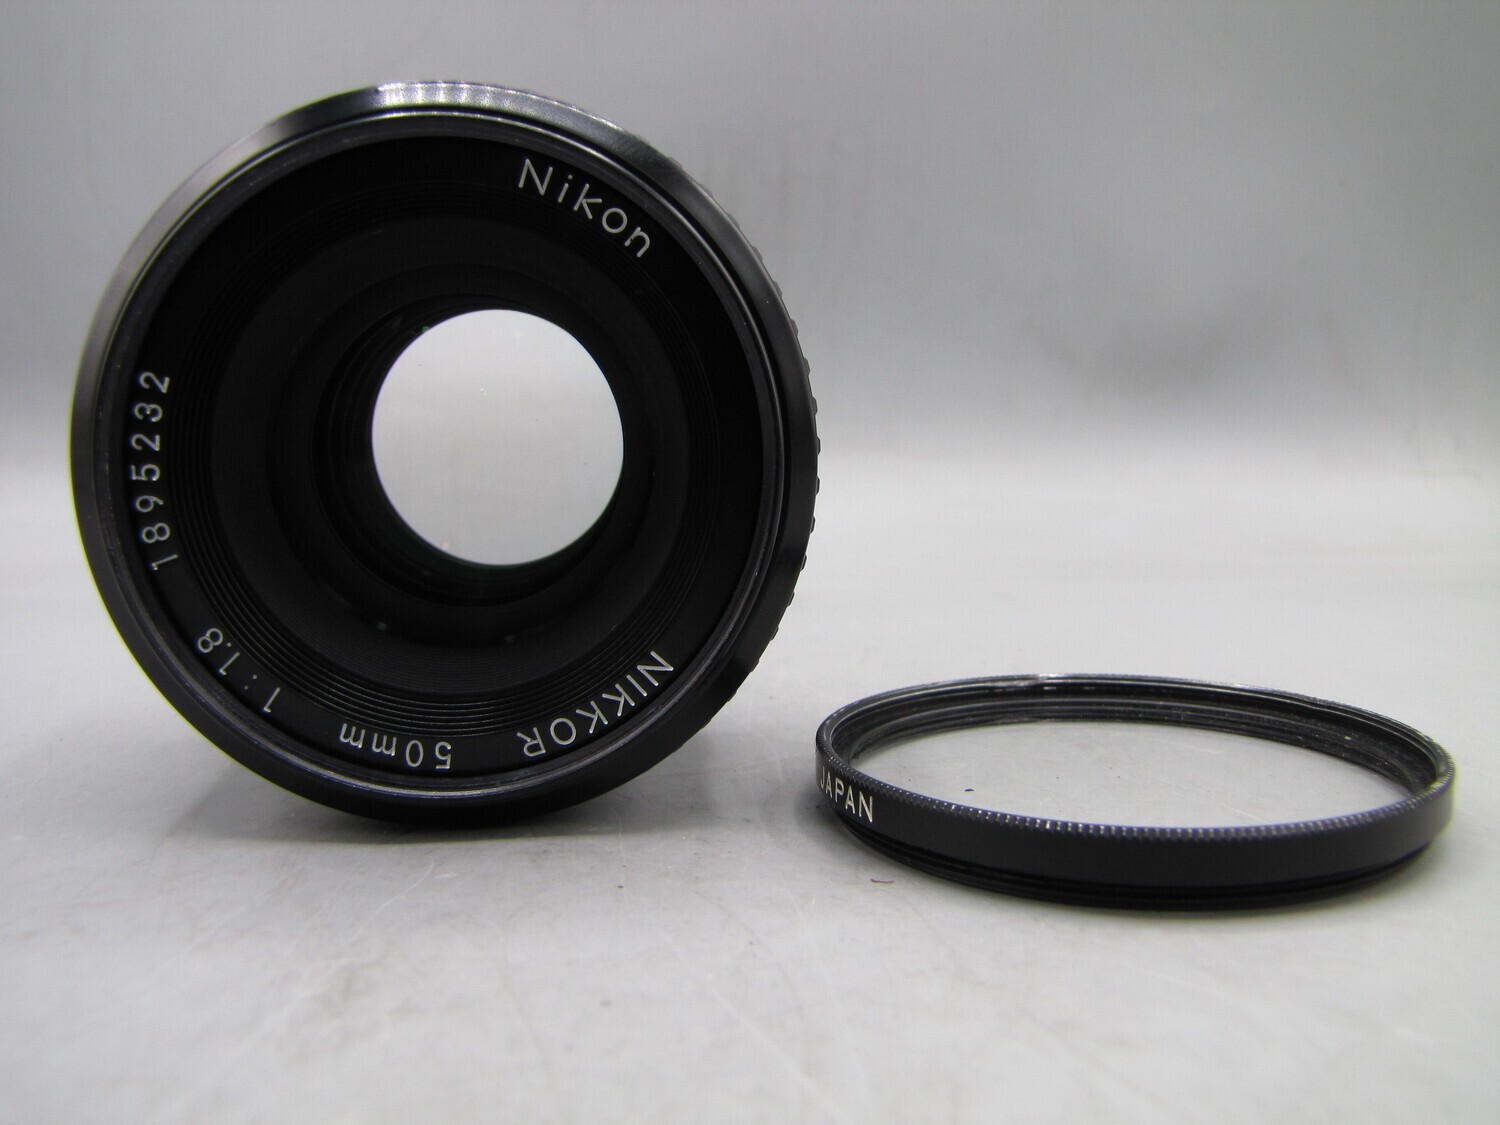 Nikon Nikkor 50mm 1:1.8 Lens for SLR cameras Tested